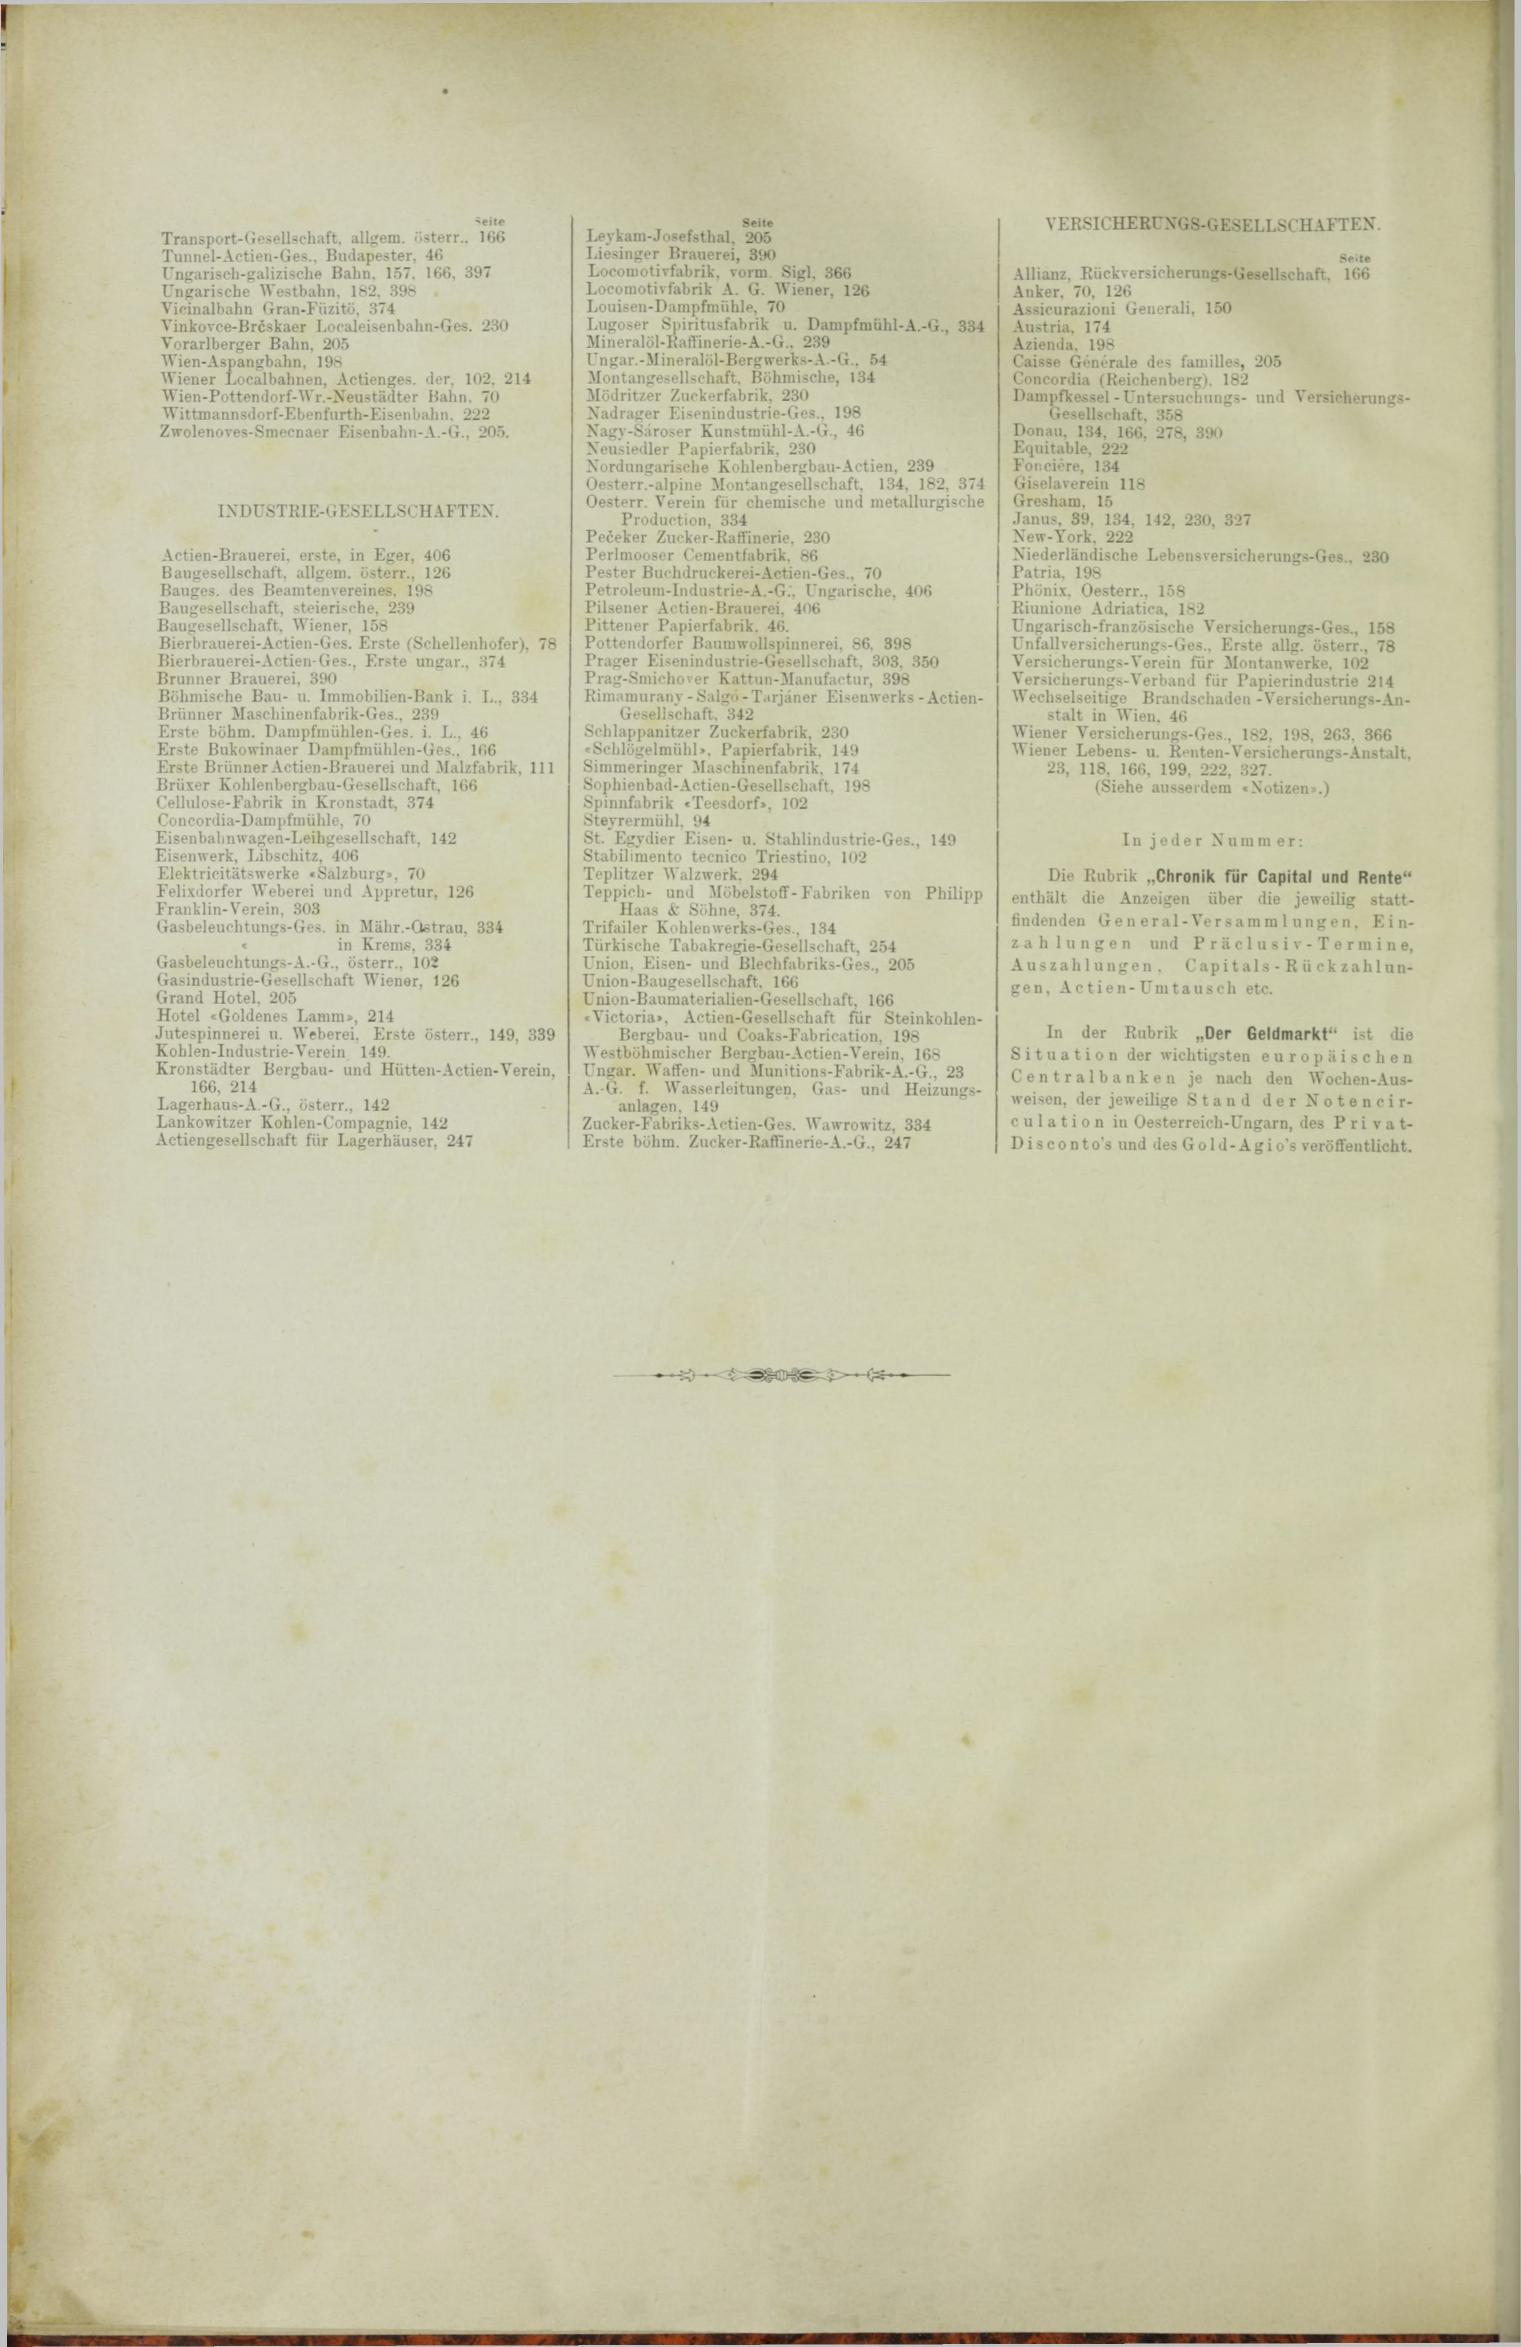 Der Tresor 06.09.1888 - Seite 12